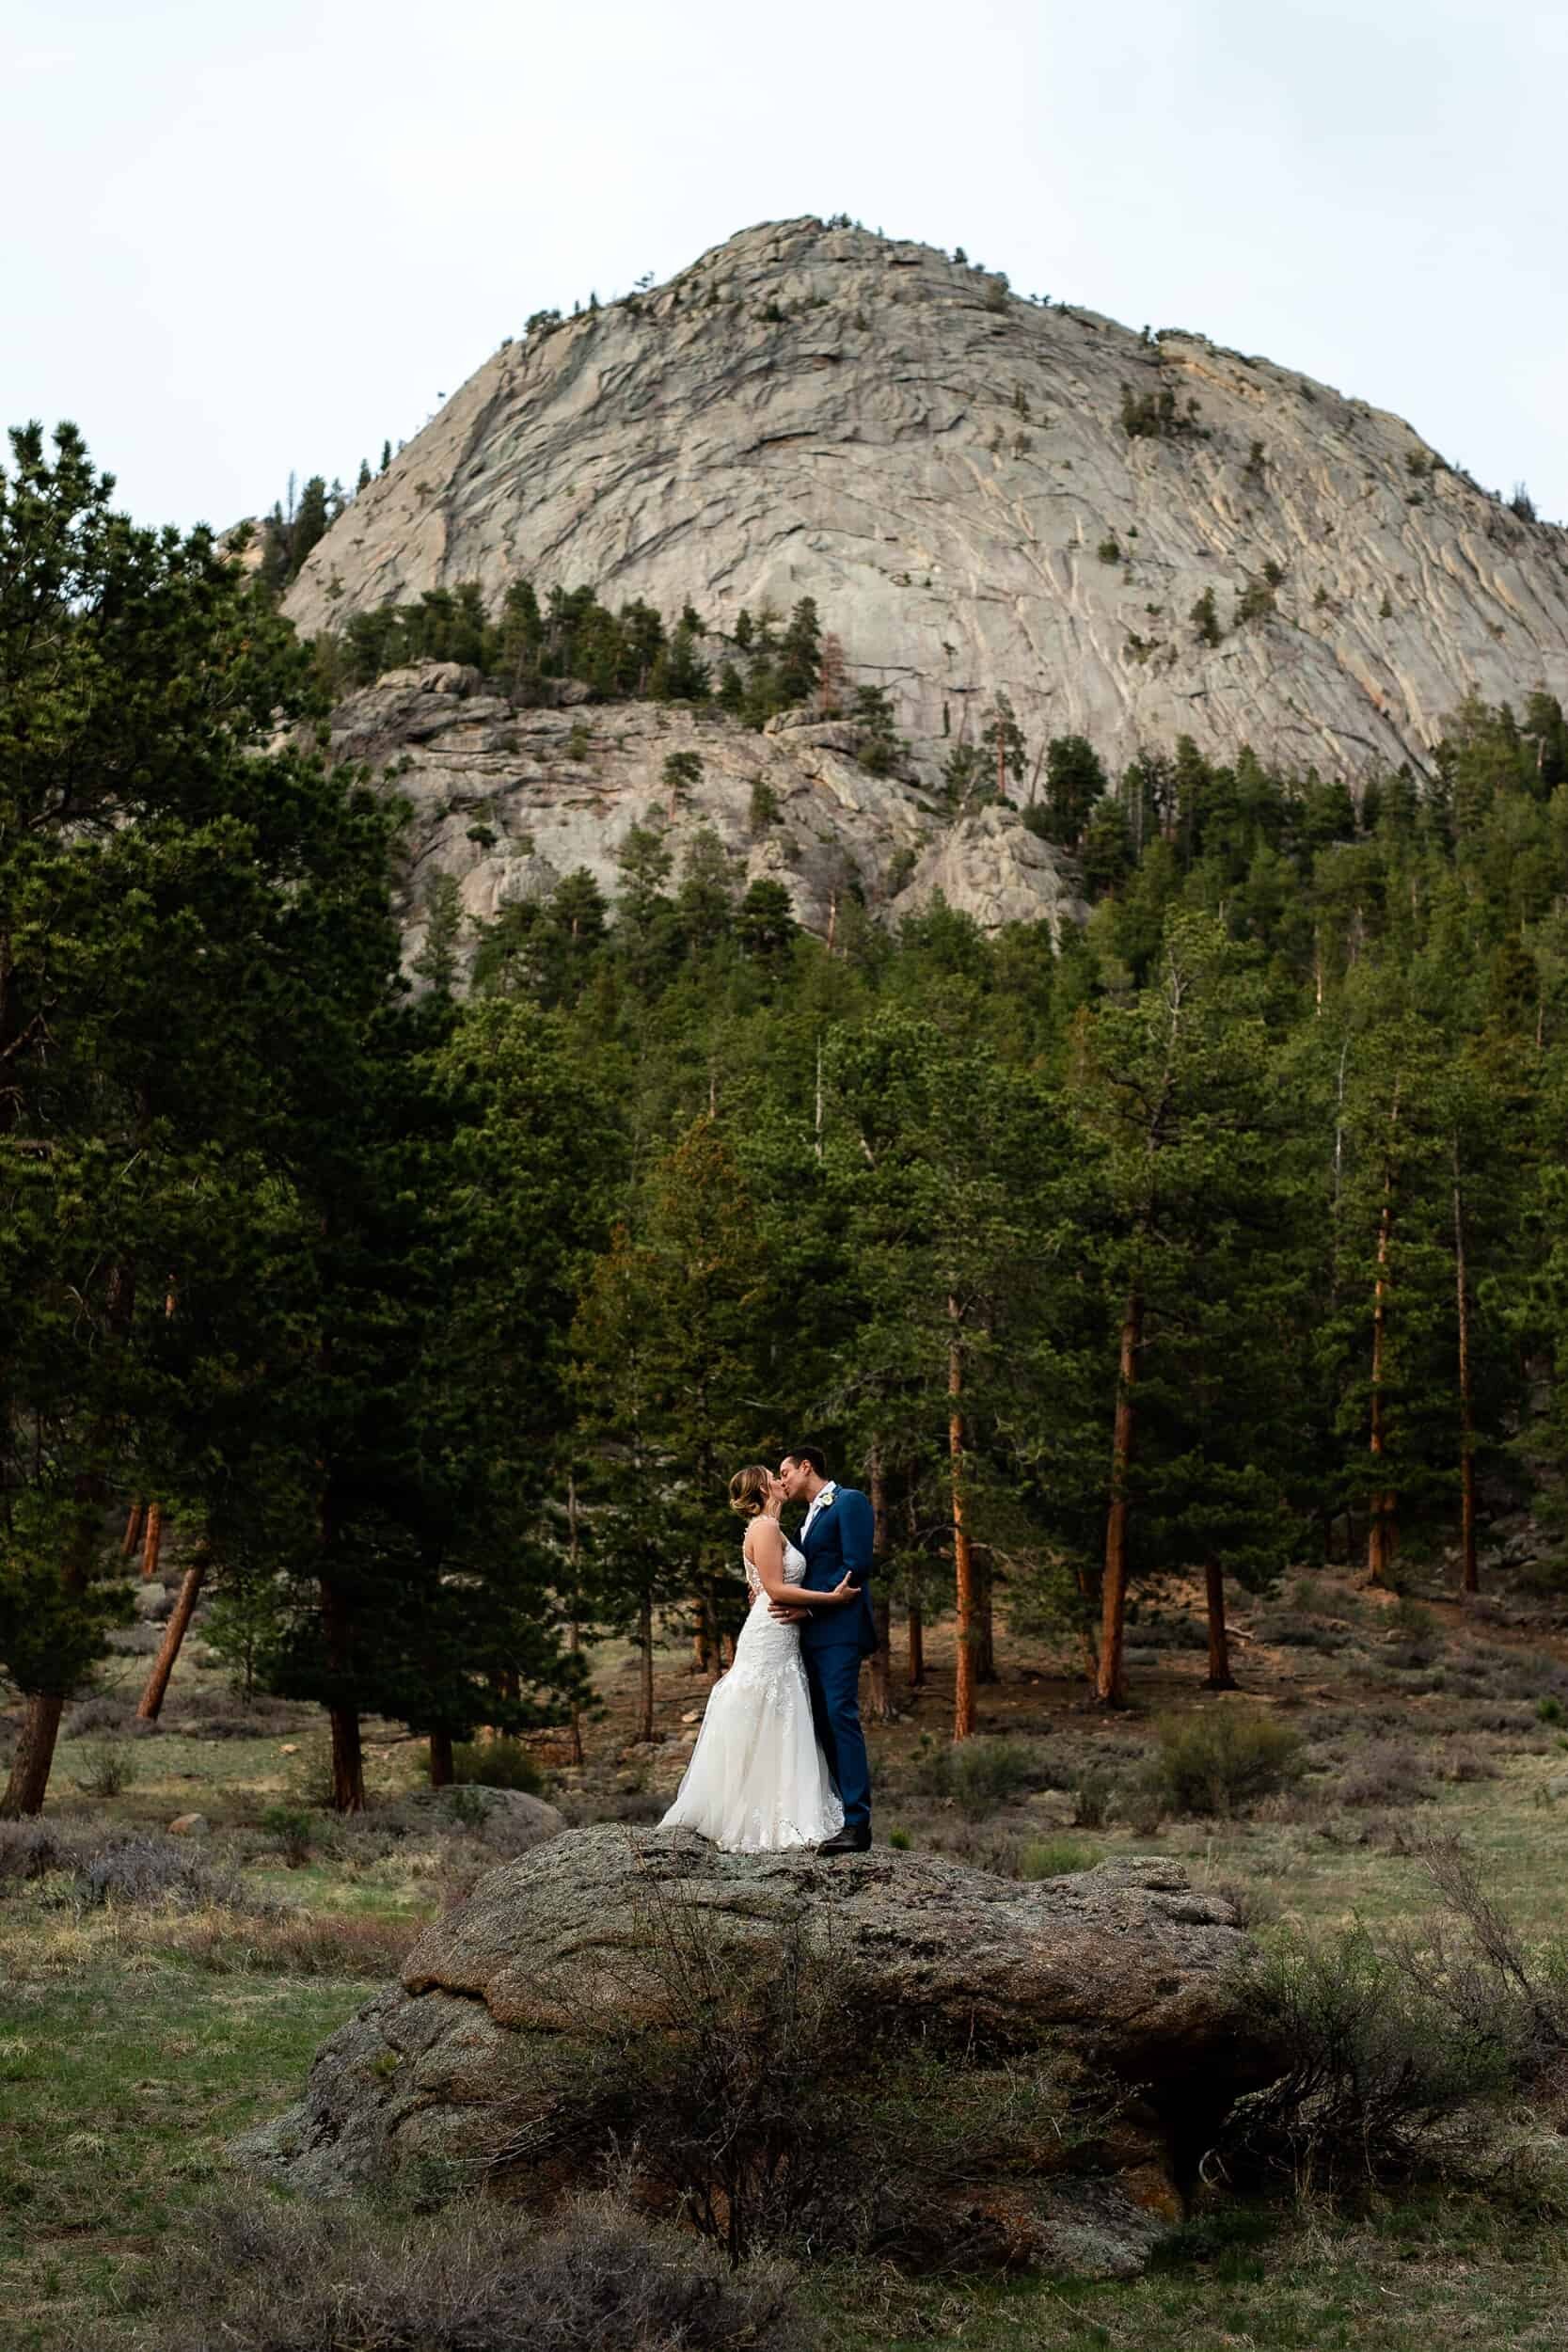 Della Terra Mountain Chateau Rocky Mountain National Park Wedding Venue Estes Park Colorado | Kyle Loves Tori Photography